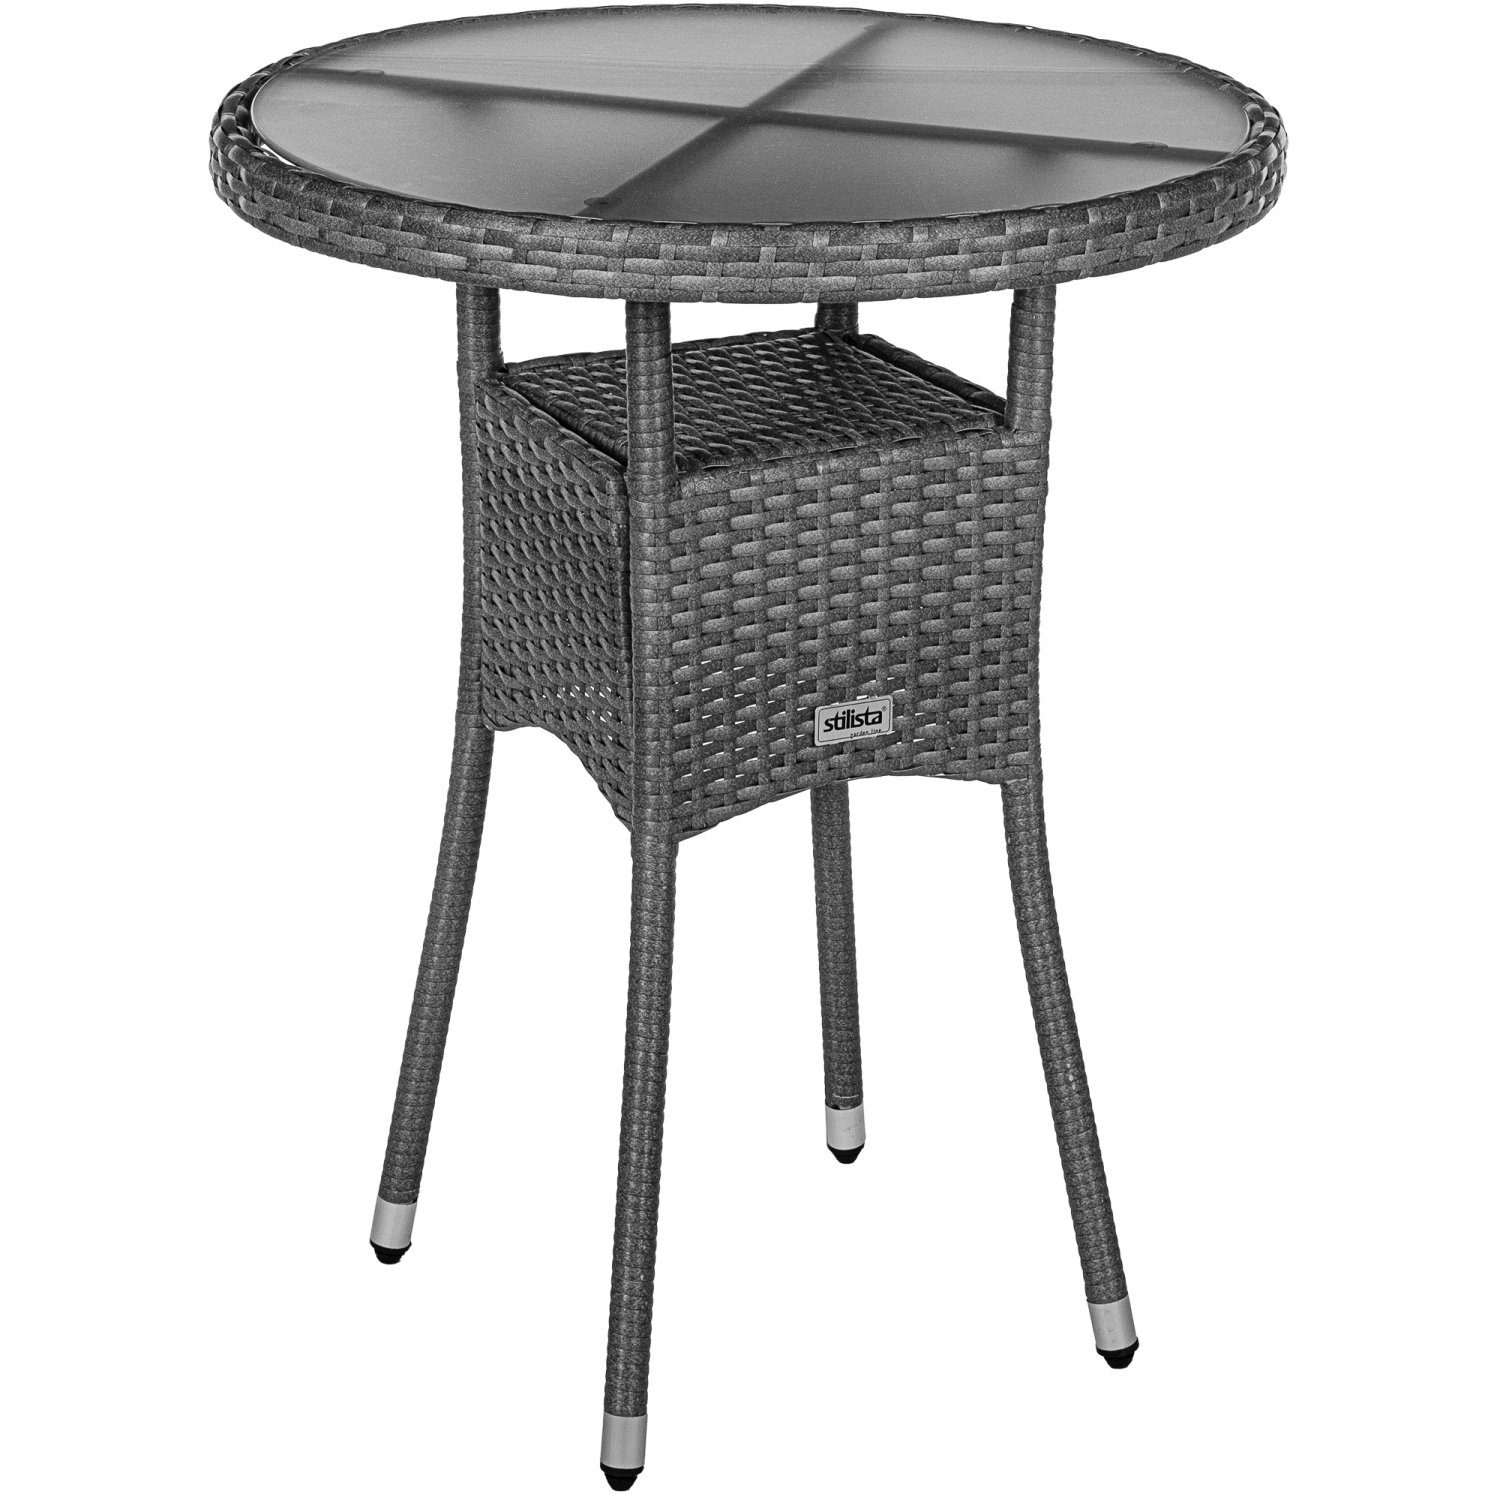 Tischplatte, STILISTA Modell- Farbwahl und Kaffeetisch, Balkontisch Beistelltisch Grau Loungetisch Rund, Gartentisch Glas Polyrattan,